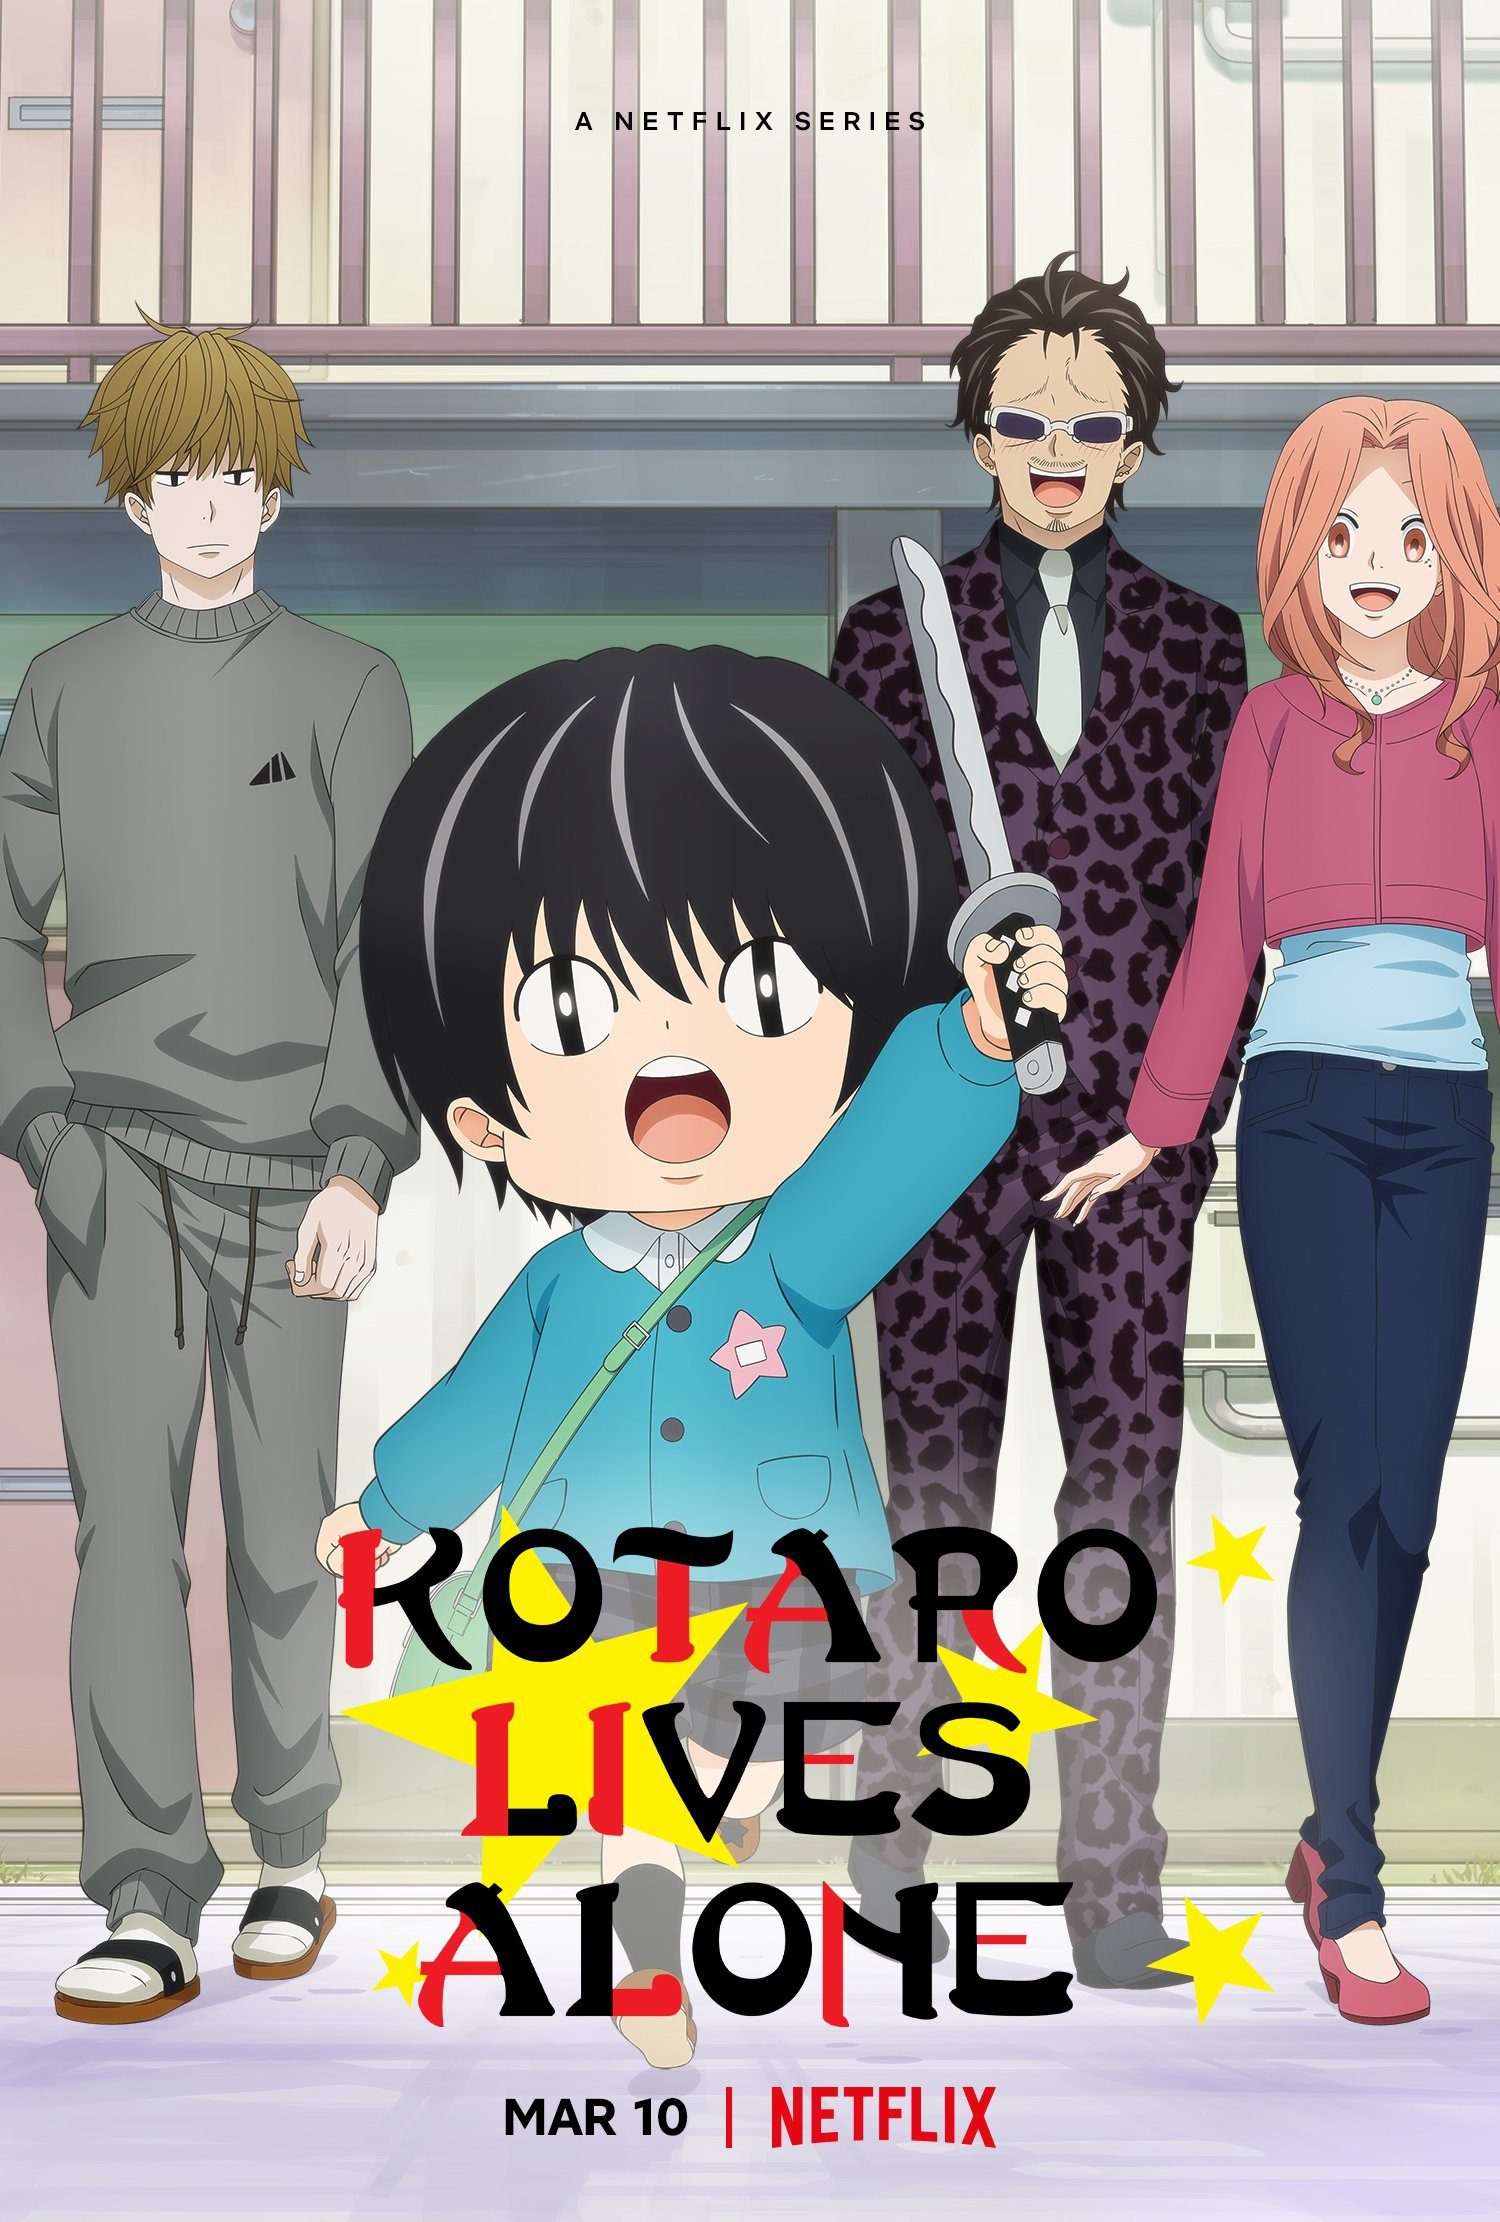 Kotaro parents